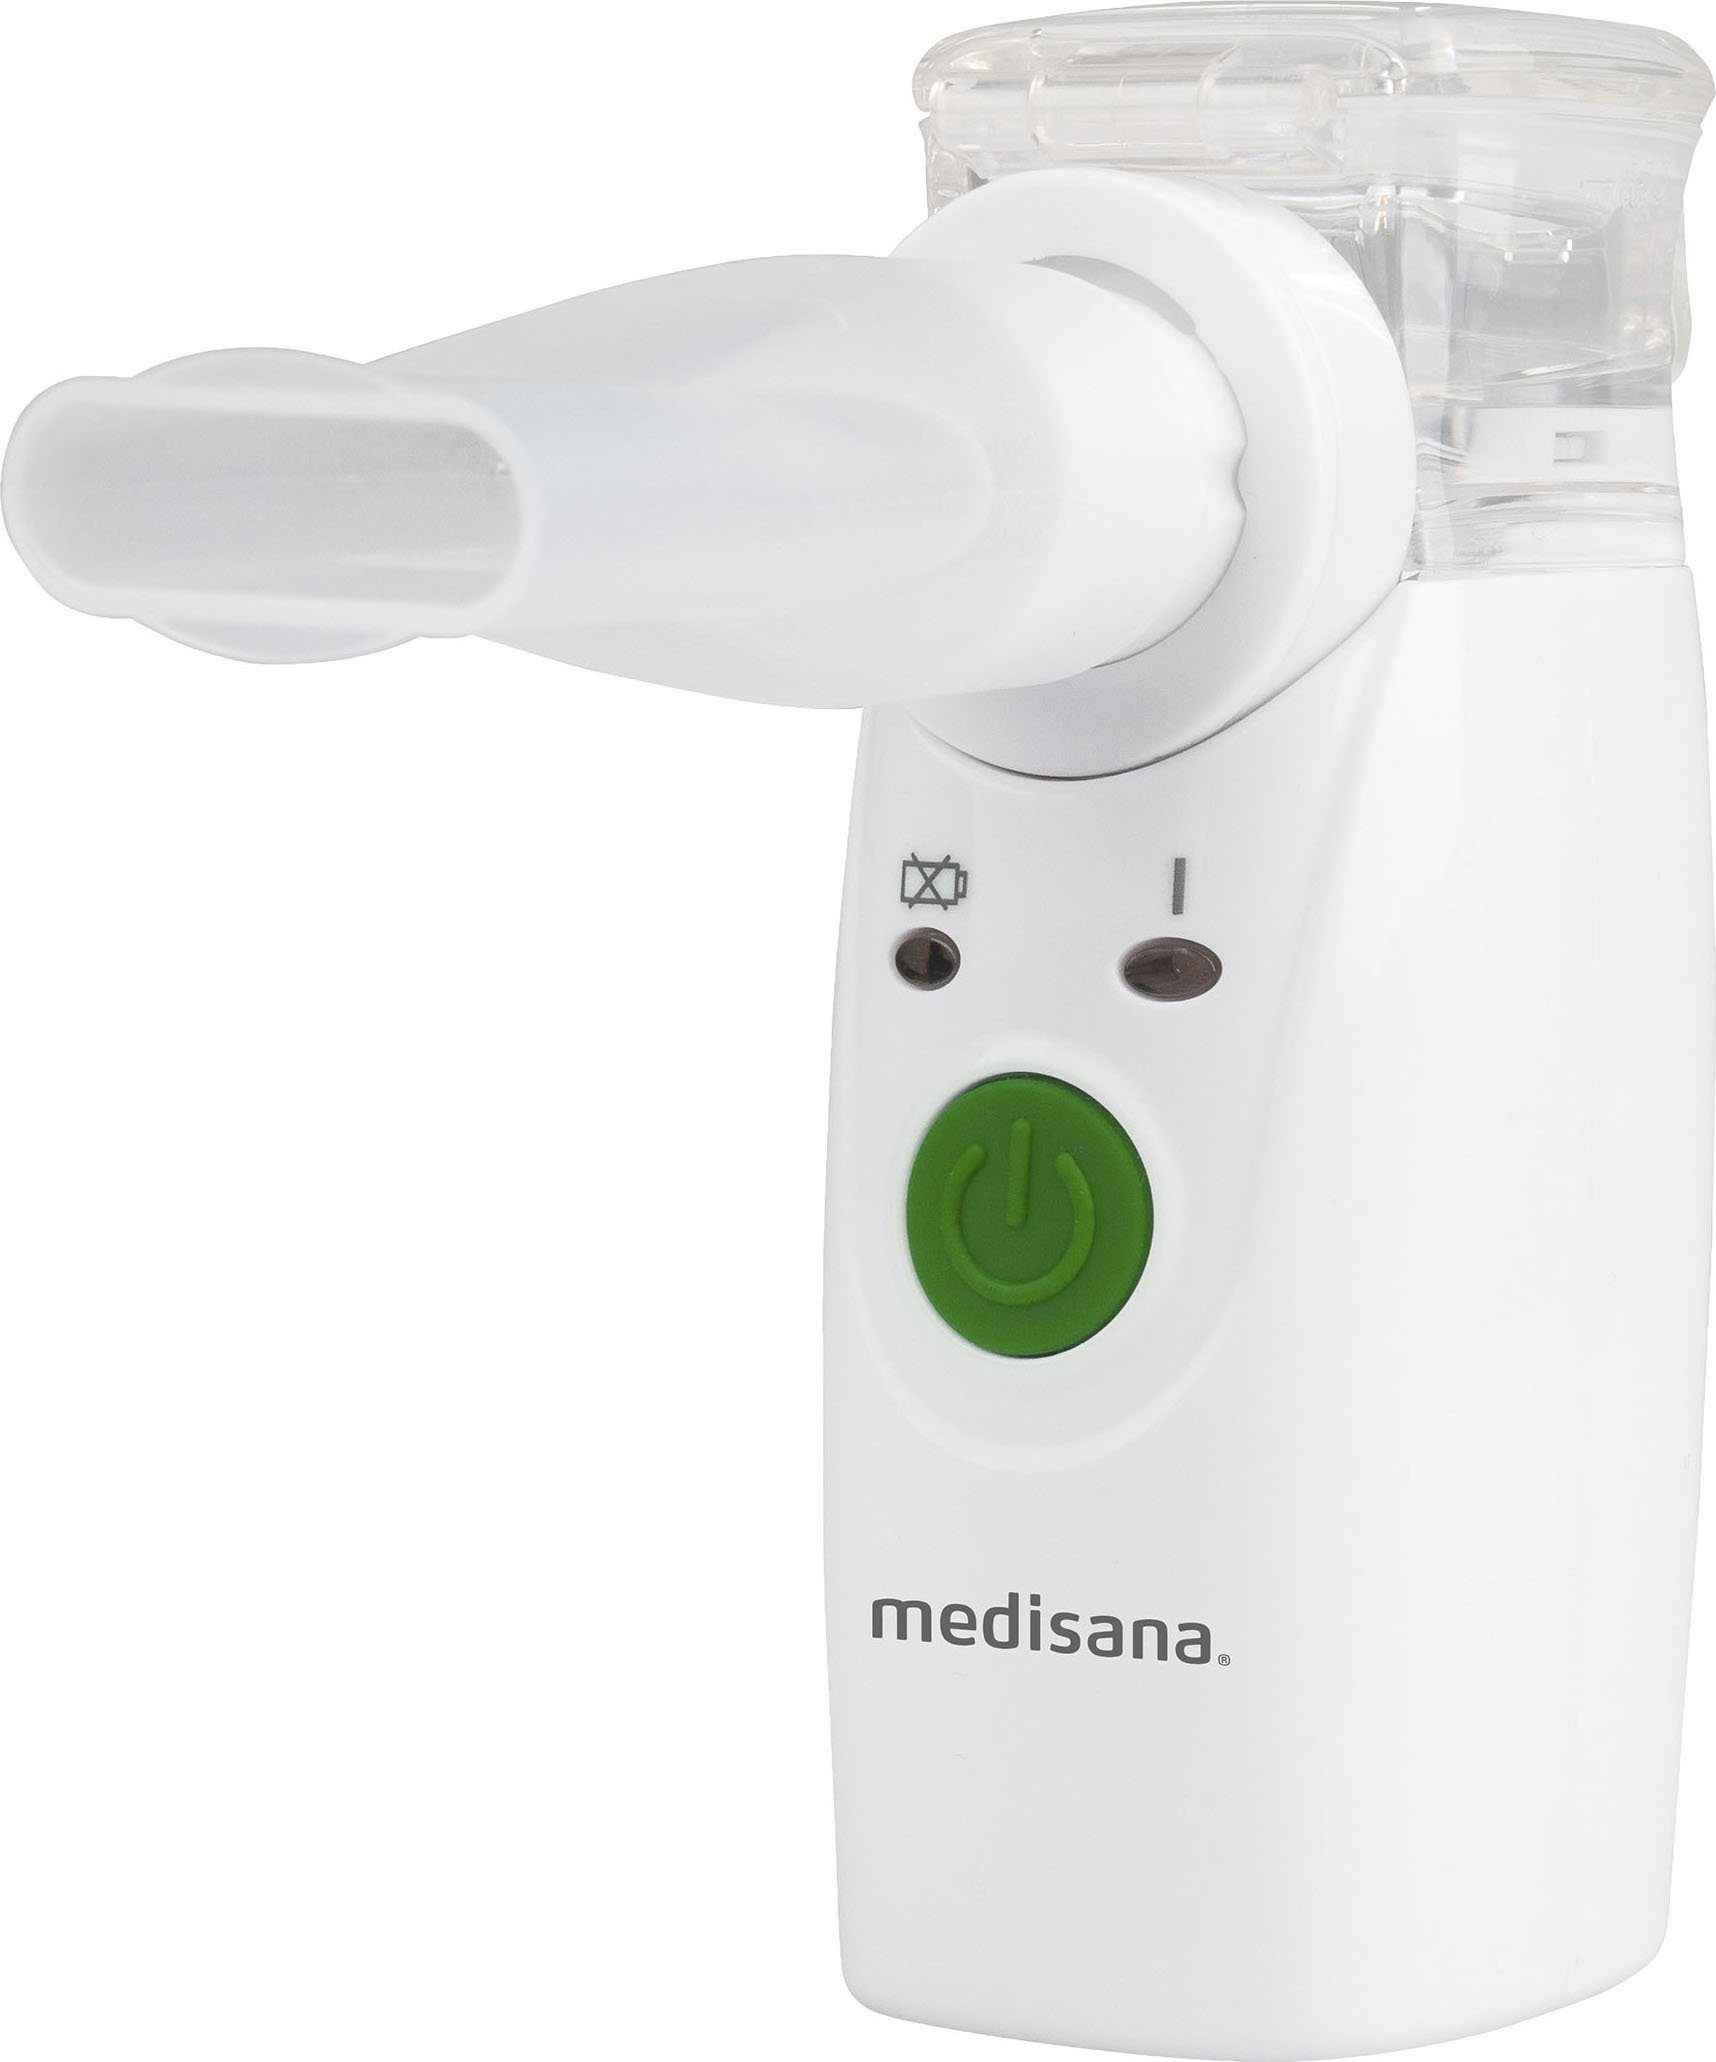 Medisana Inhalationsgerät IN 525, Mini-Inhalator